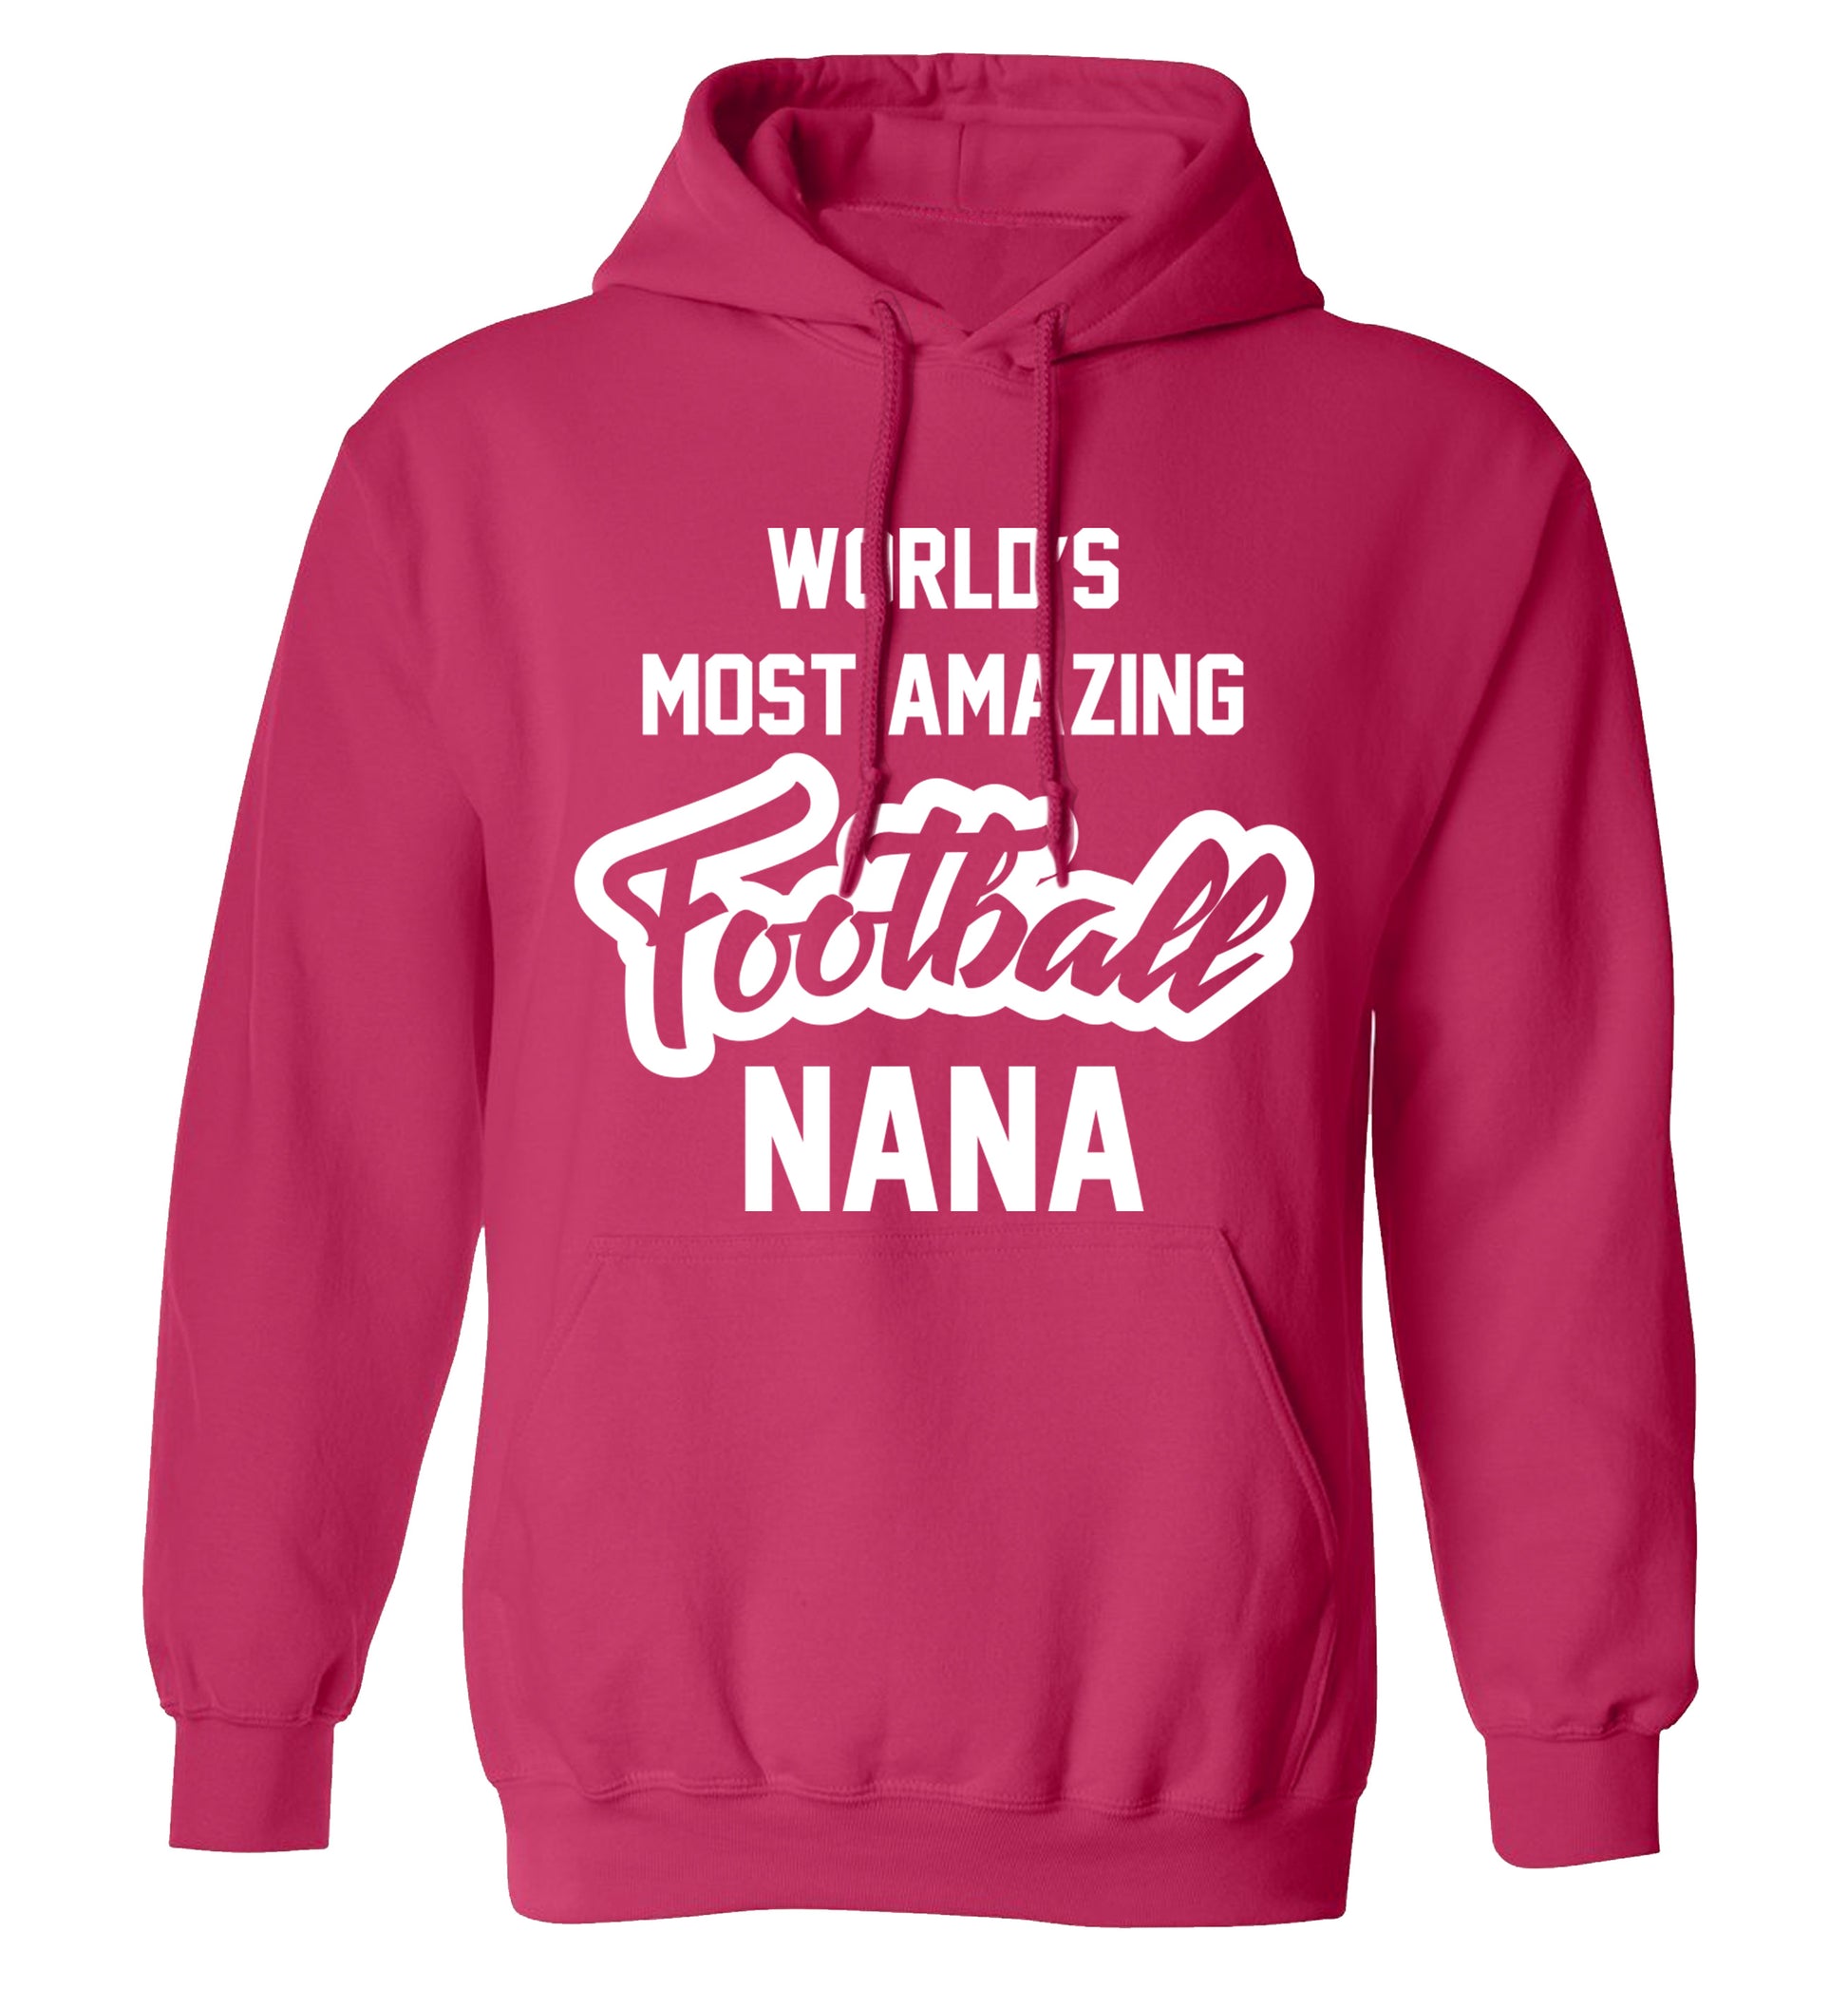 Worlds most amazing football nana adults unisexpink hoodie 2XL